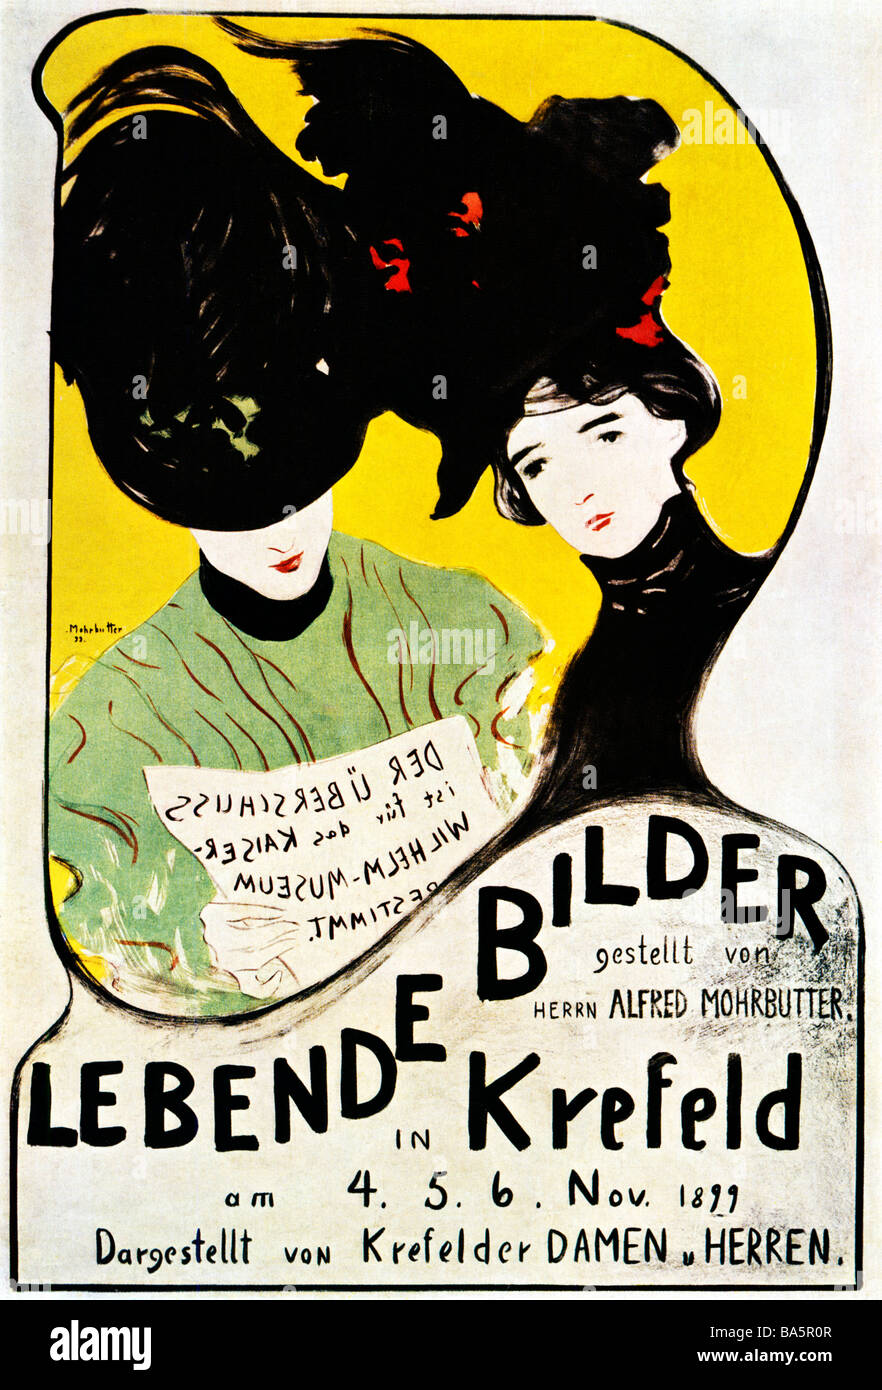 Lebende Bilder 1899 affiche Art Nouveau par Alfred Mohrbutter pour une exposition de photos La vie des hommes et des femmes à Krefeld Banque D'Images